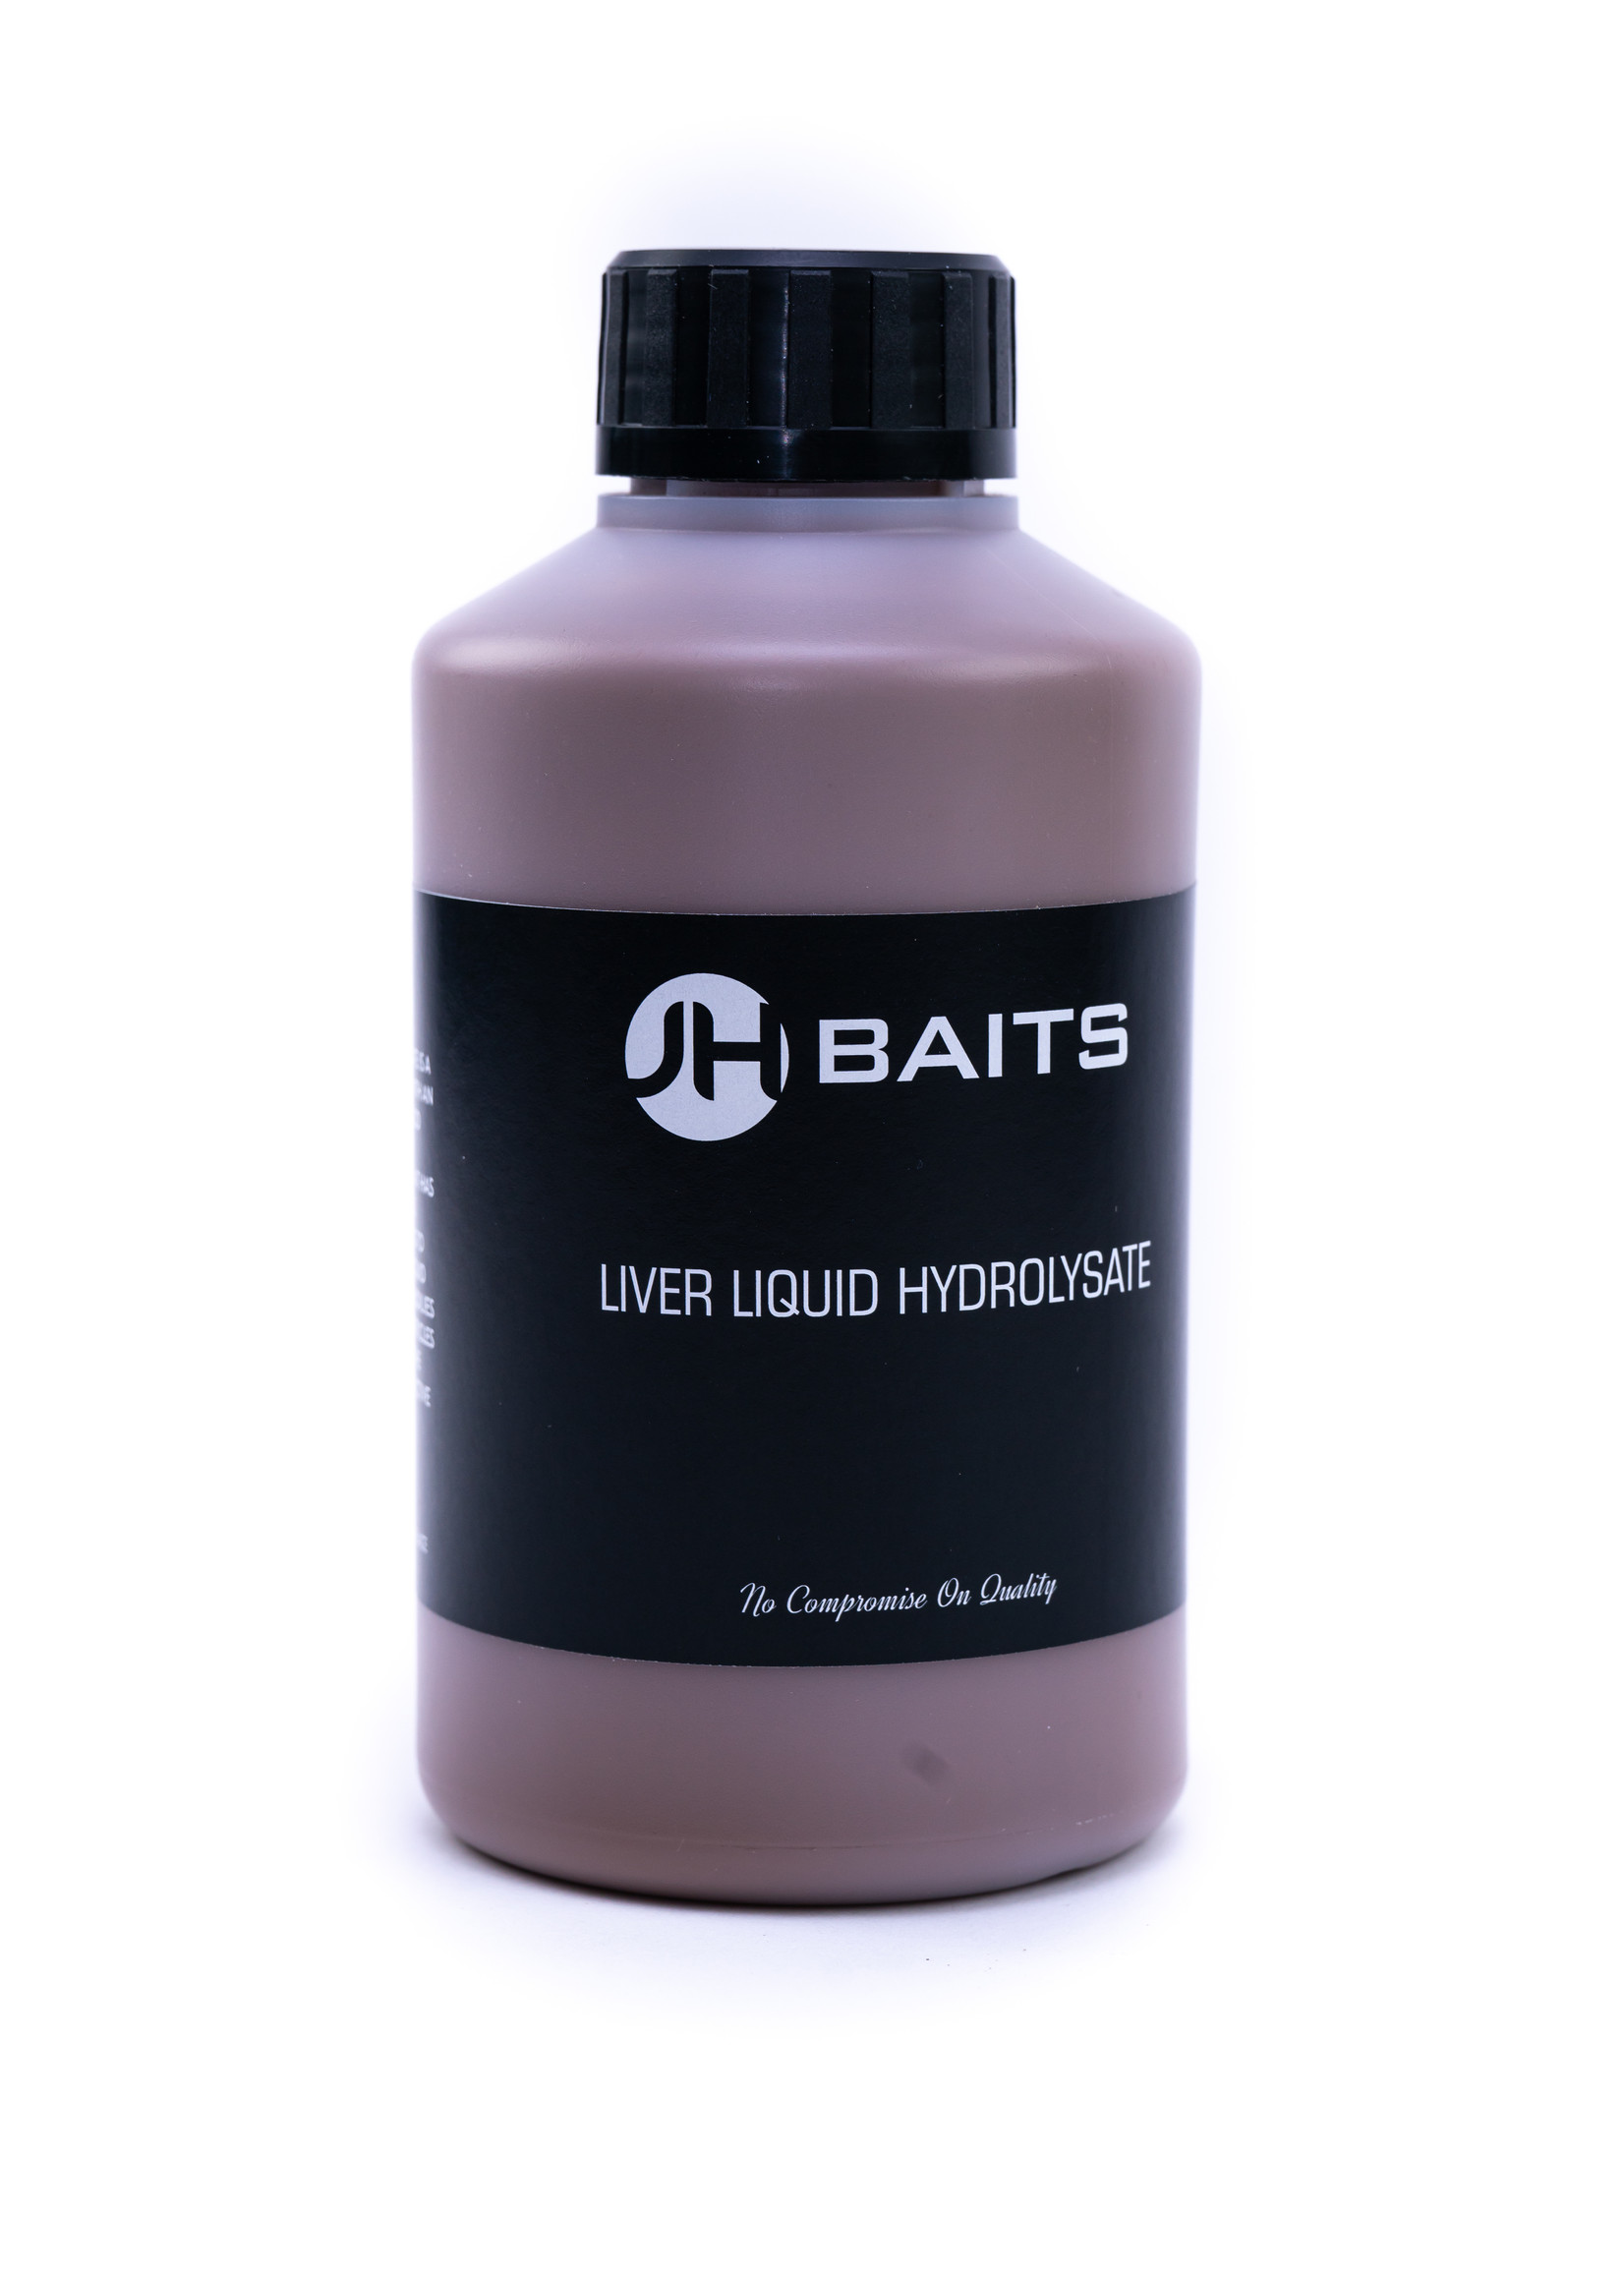 JH Baits Liver Liquid Hydrolysate